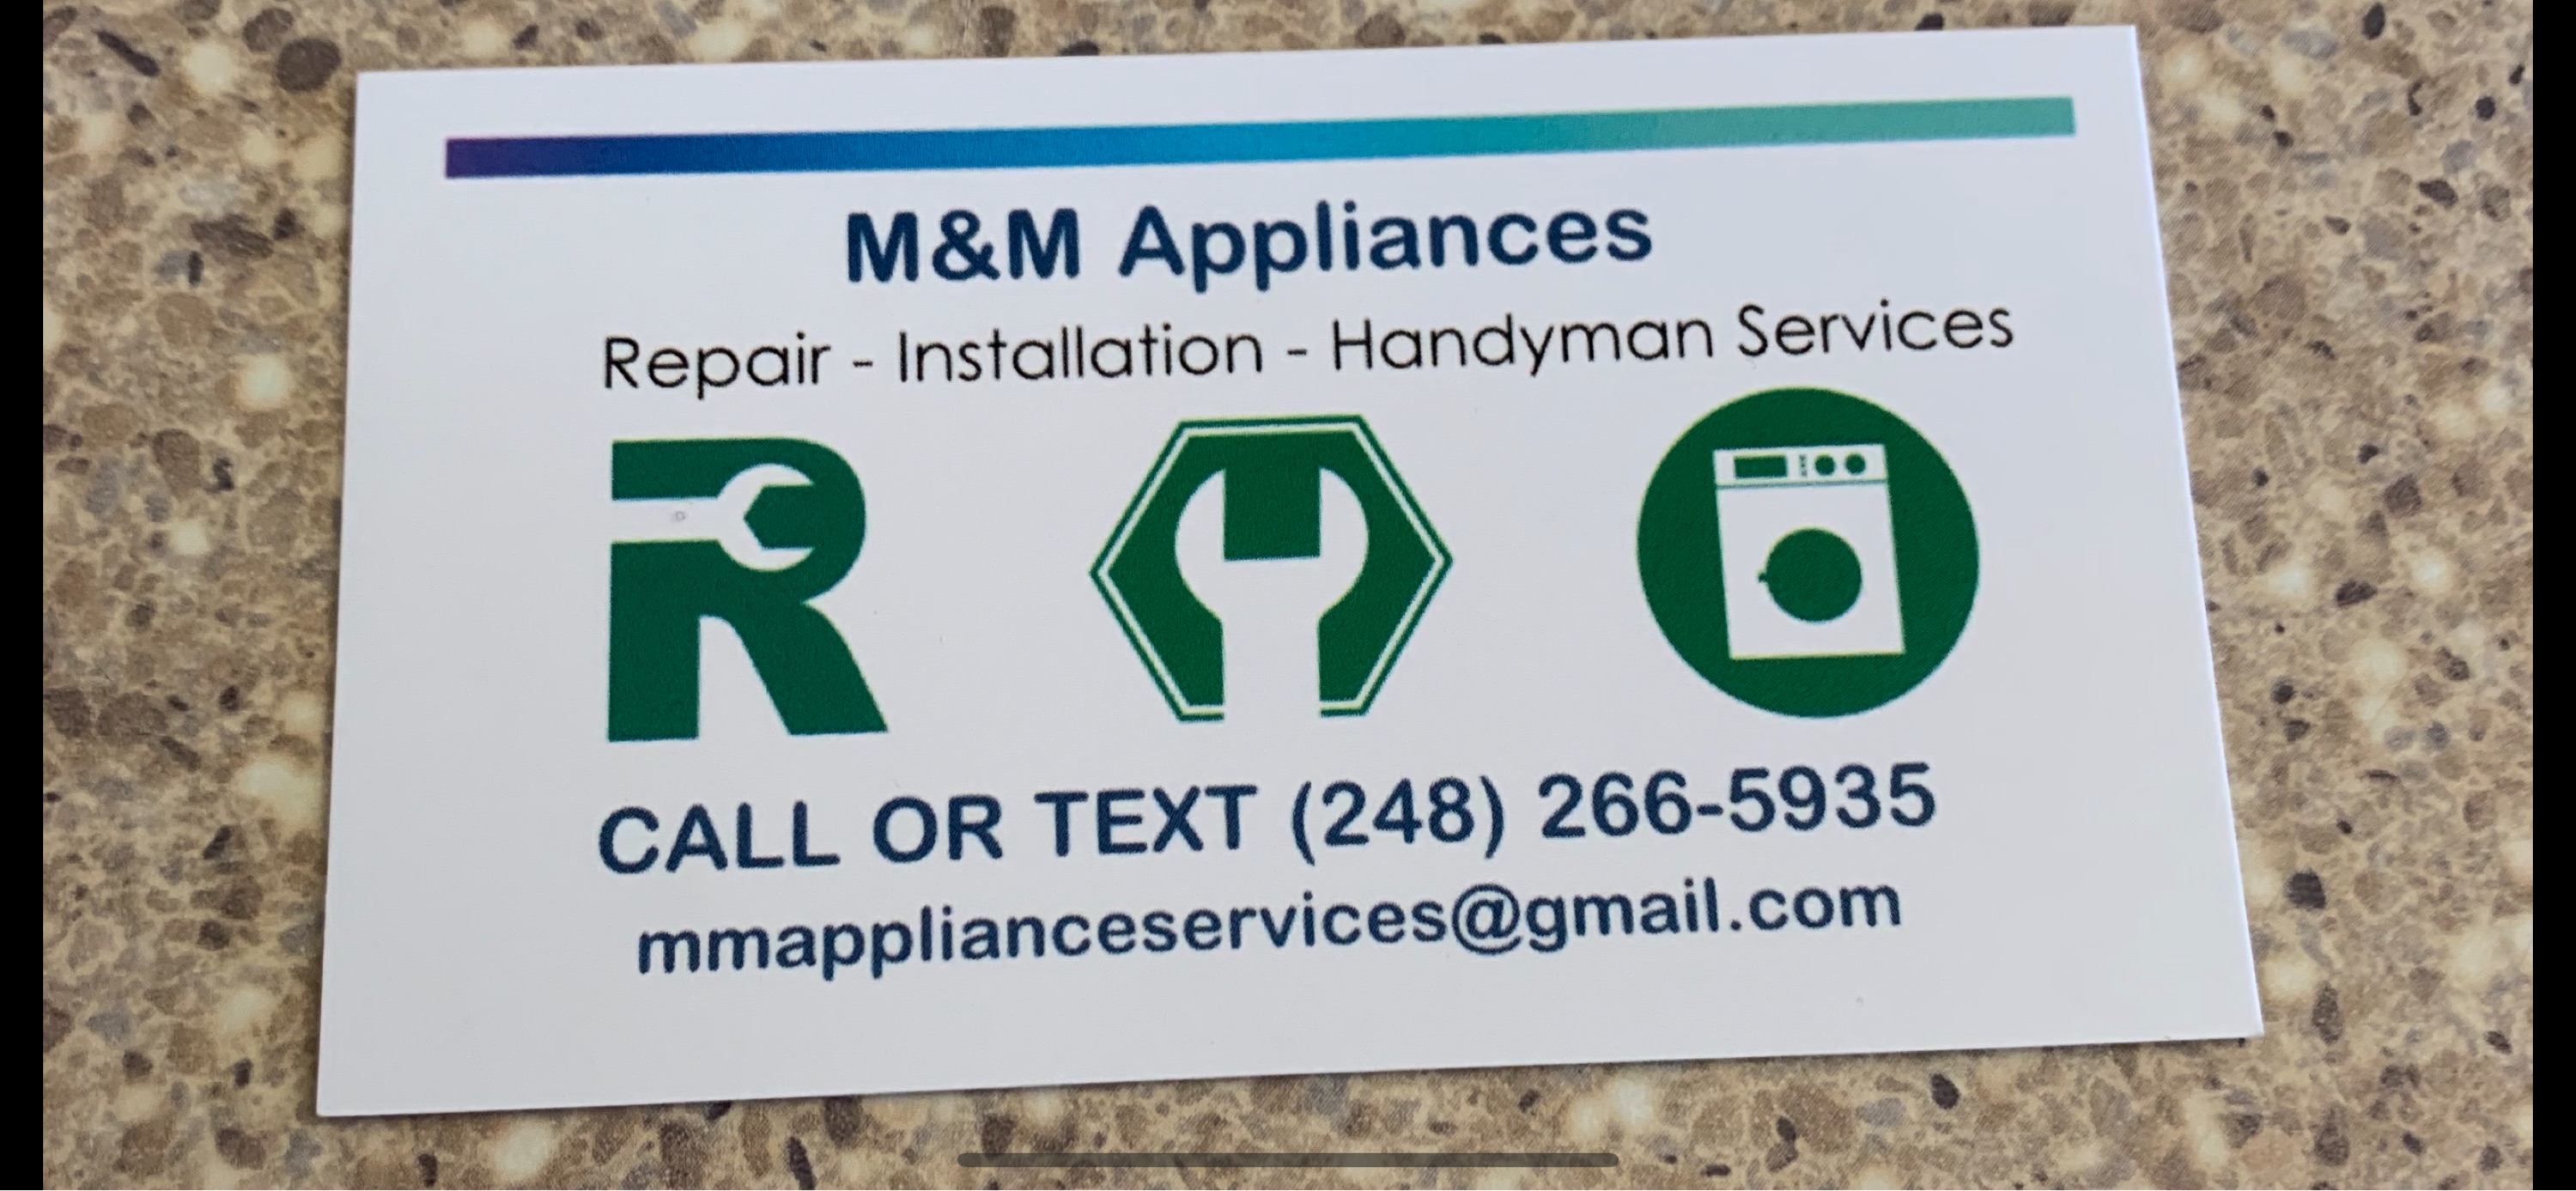 M&M Appliances Logo